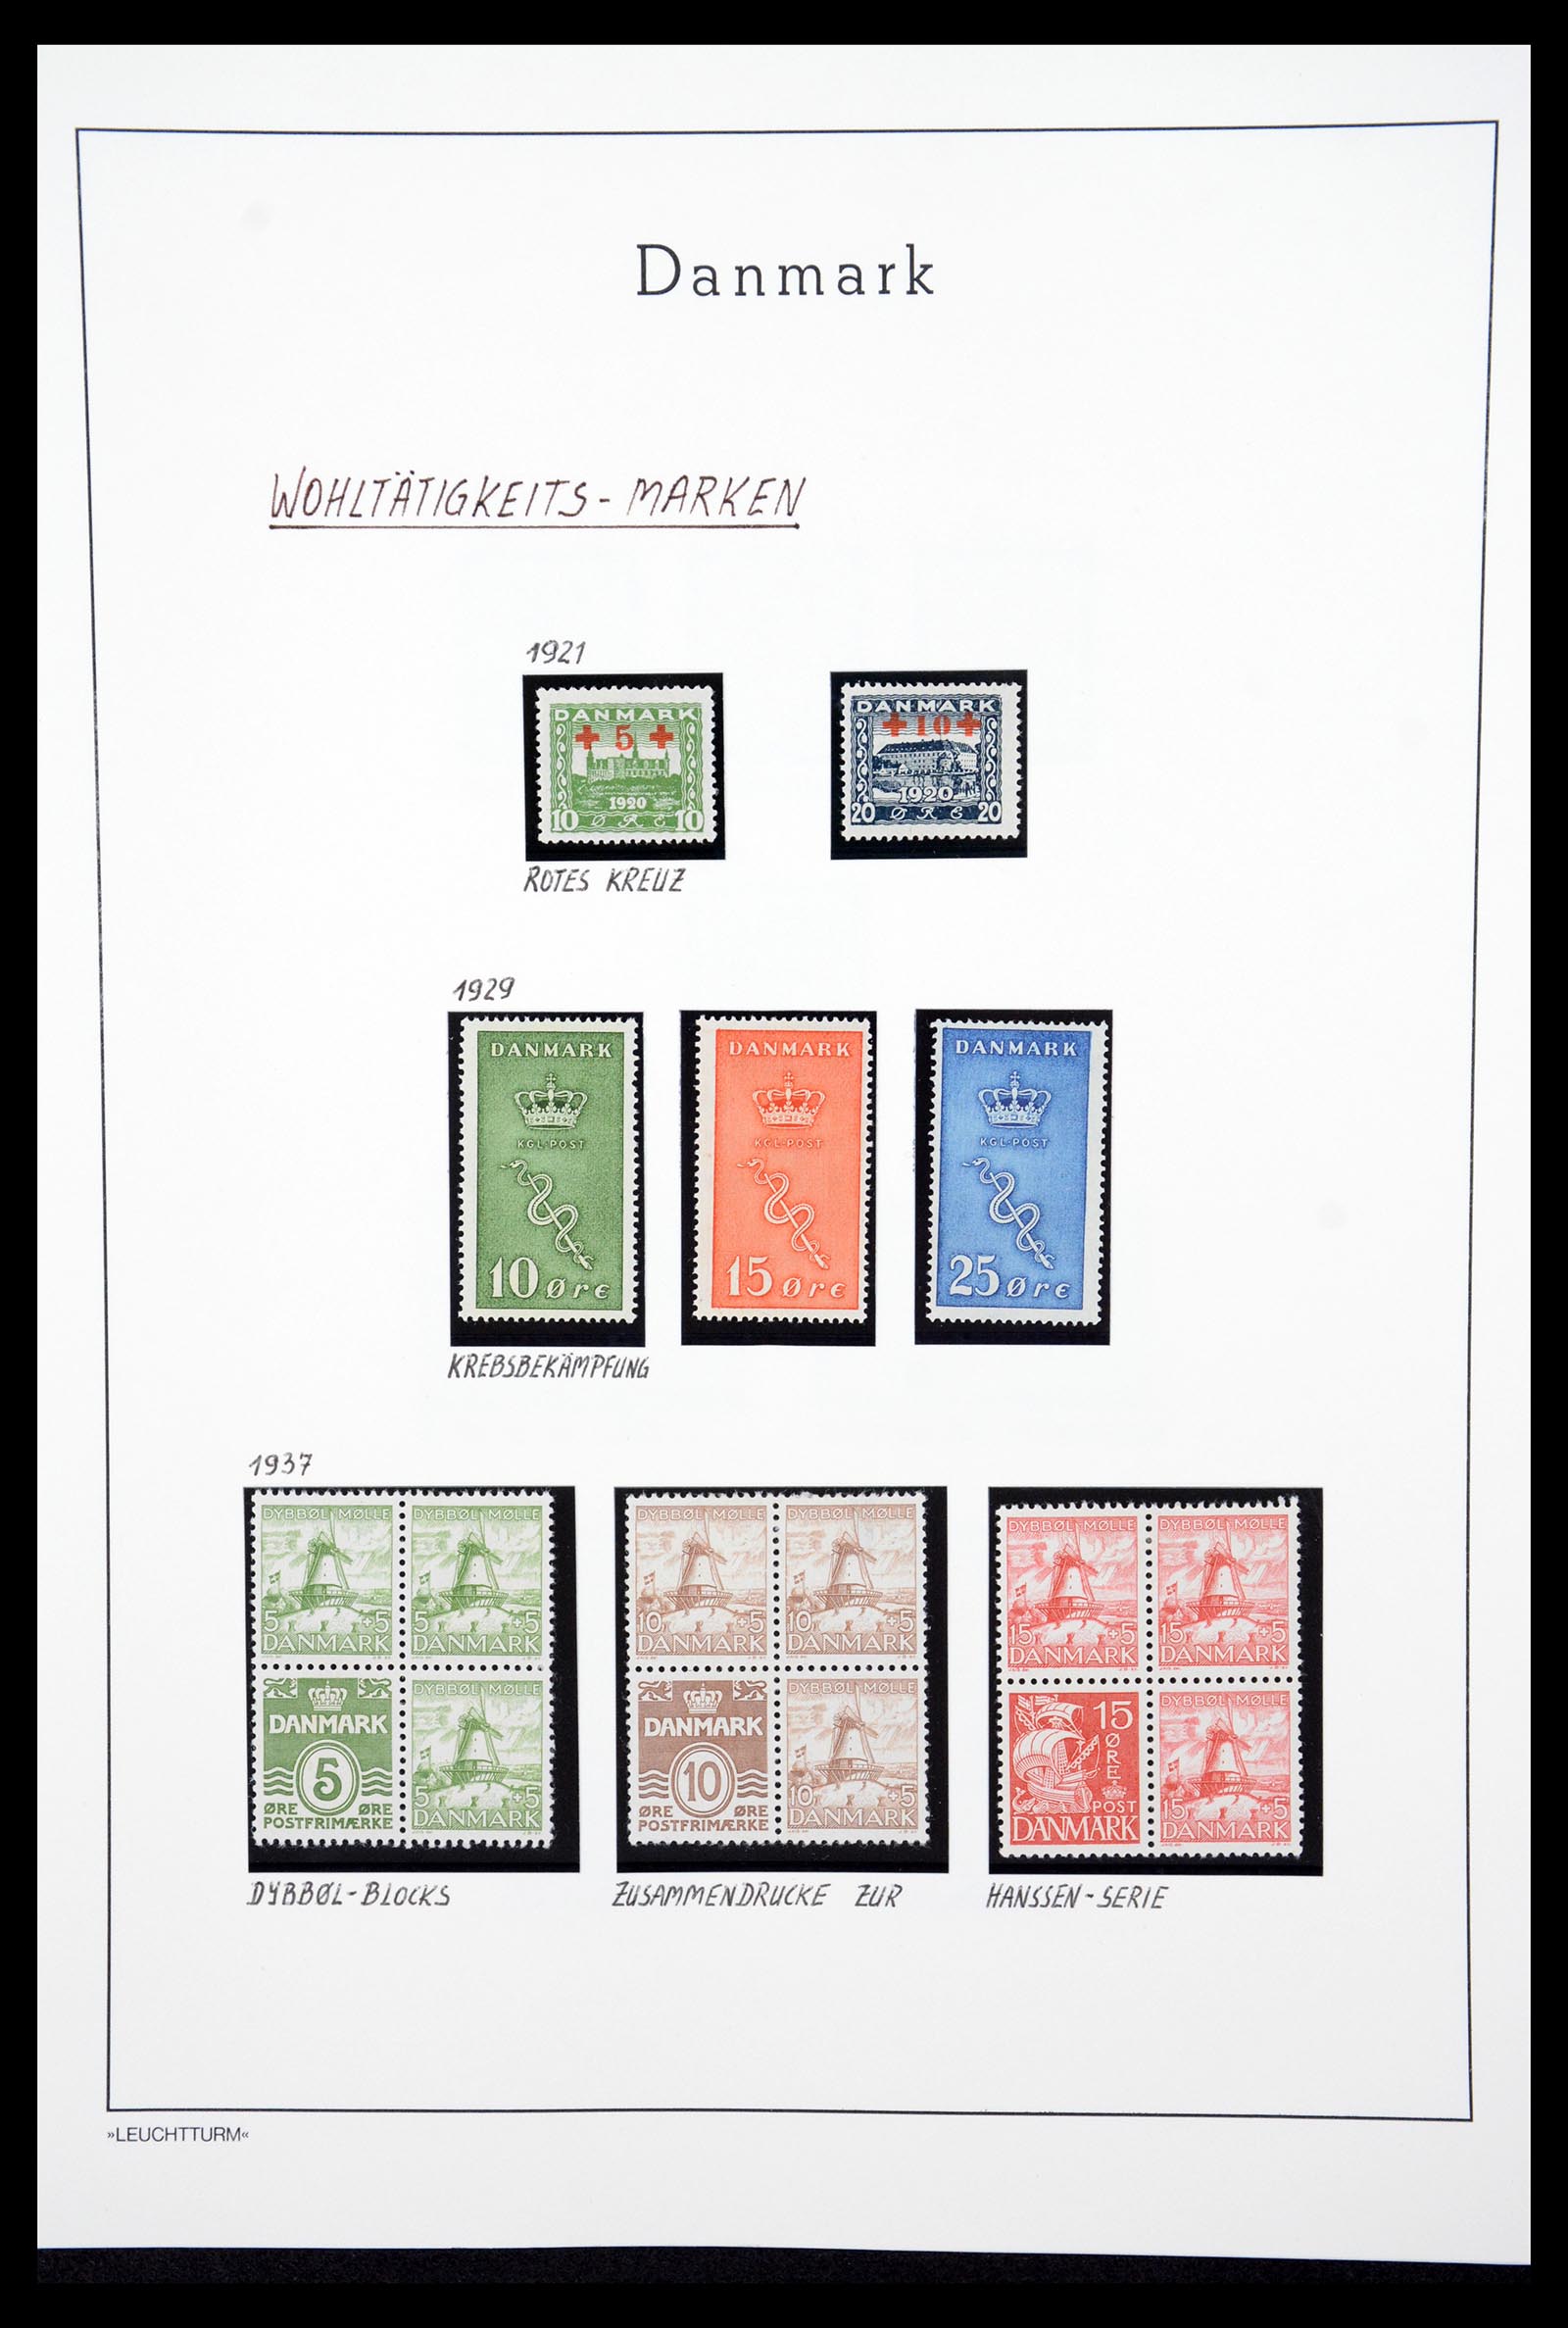 36612 056 - Stamp collection 36612 Denemarken 1851-1990.